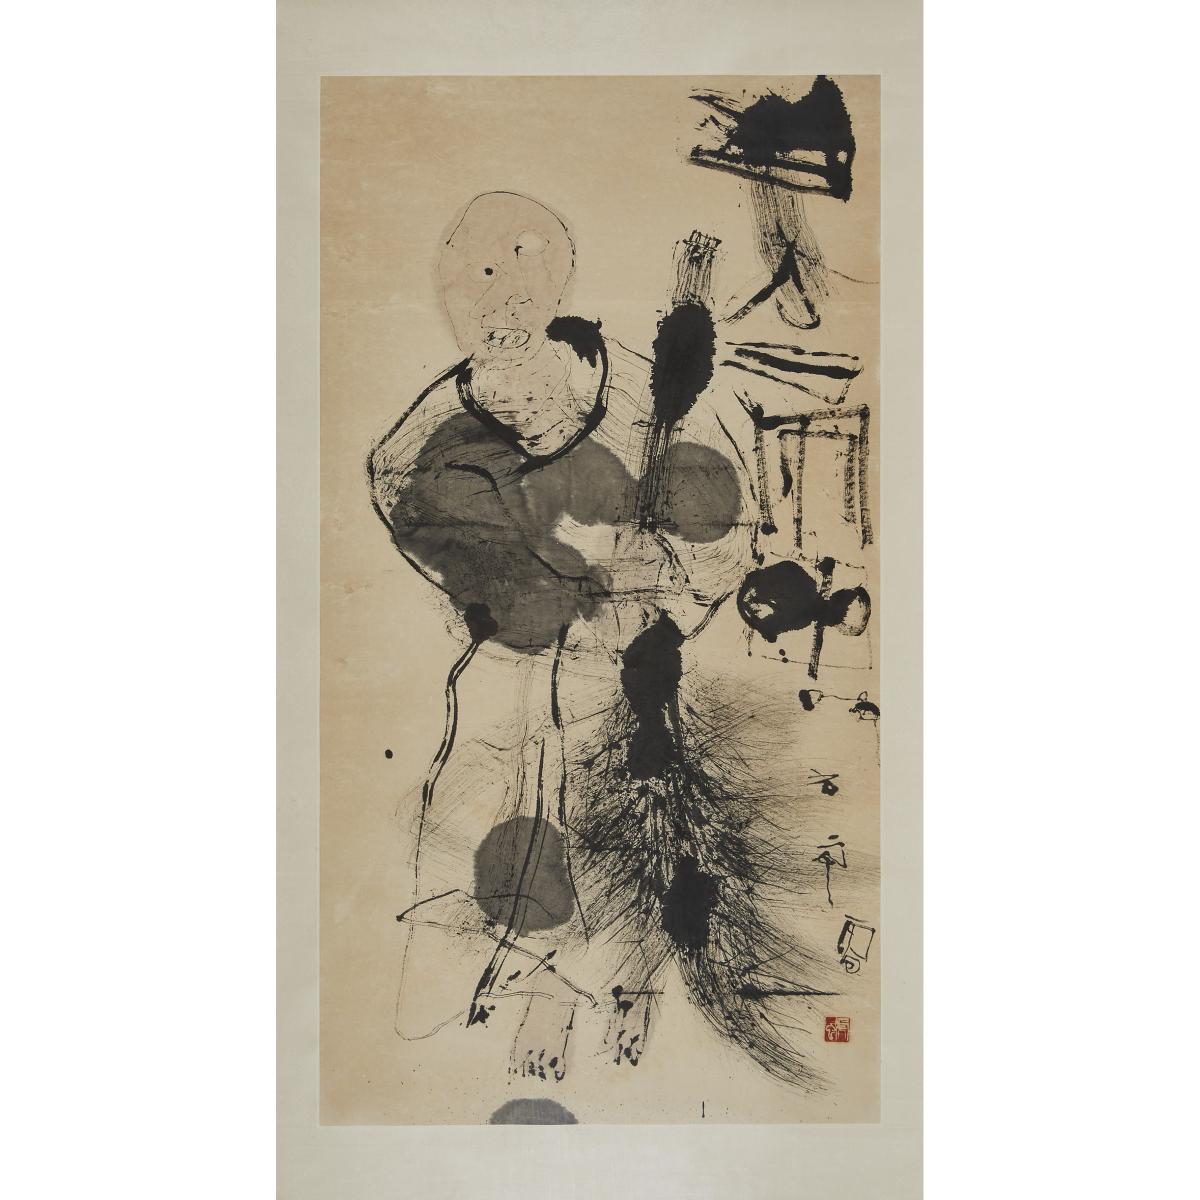 Shi Hu (1942-), Sweeping Monk, 石虎(1942-)「掃地僧」水墨紙本 鏡框, image 49.7 x 26.7 in — 126.2 x 67.8 cm